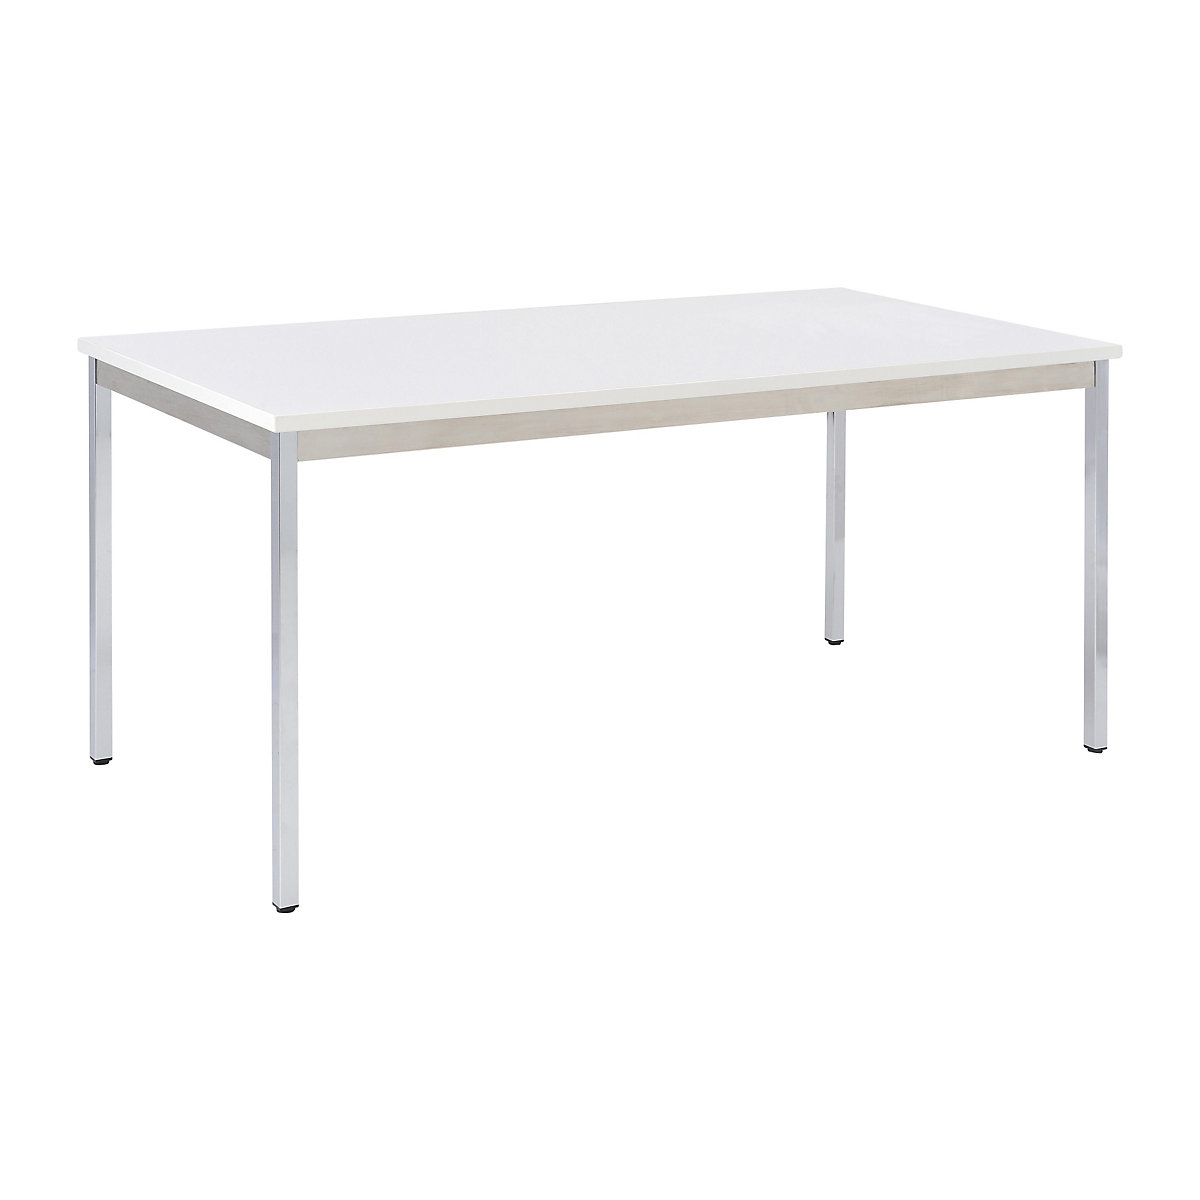 Multipurpose table – eurokraft basic, rectangular, WxH 1400 x 740 mm, depth 700 mm, light grey top, chrome plated frame-13